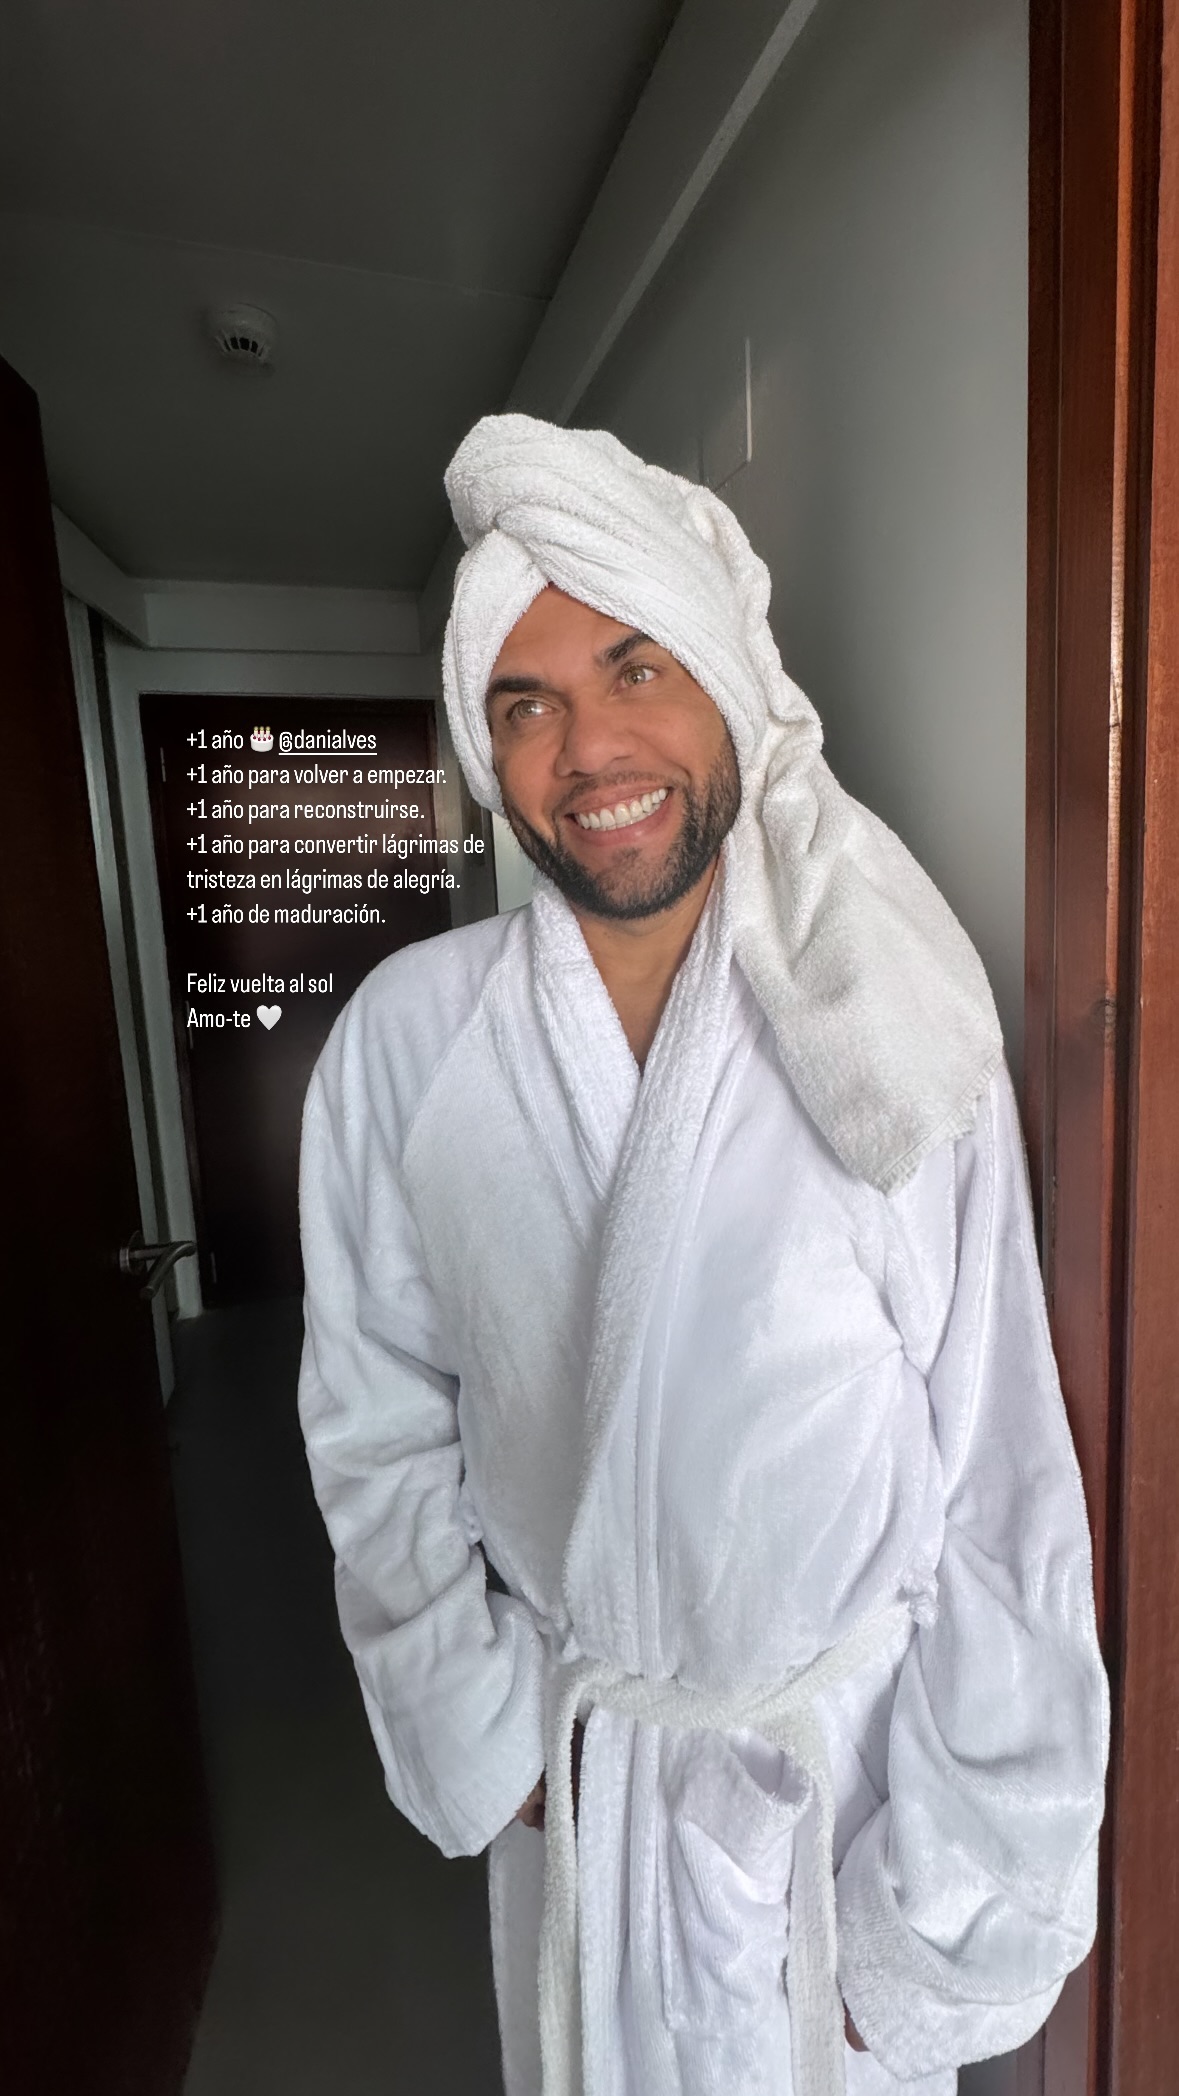 Daniel Alves aparece sorridente na foto publicada no dai do aniversário. Foto: Reprodução/Instagram (@joanasanz)